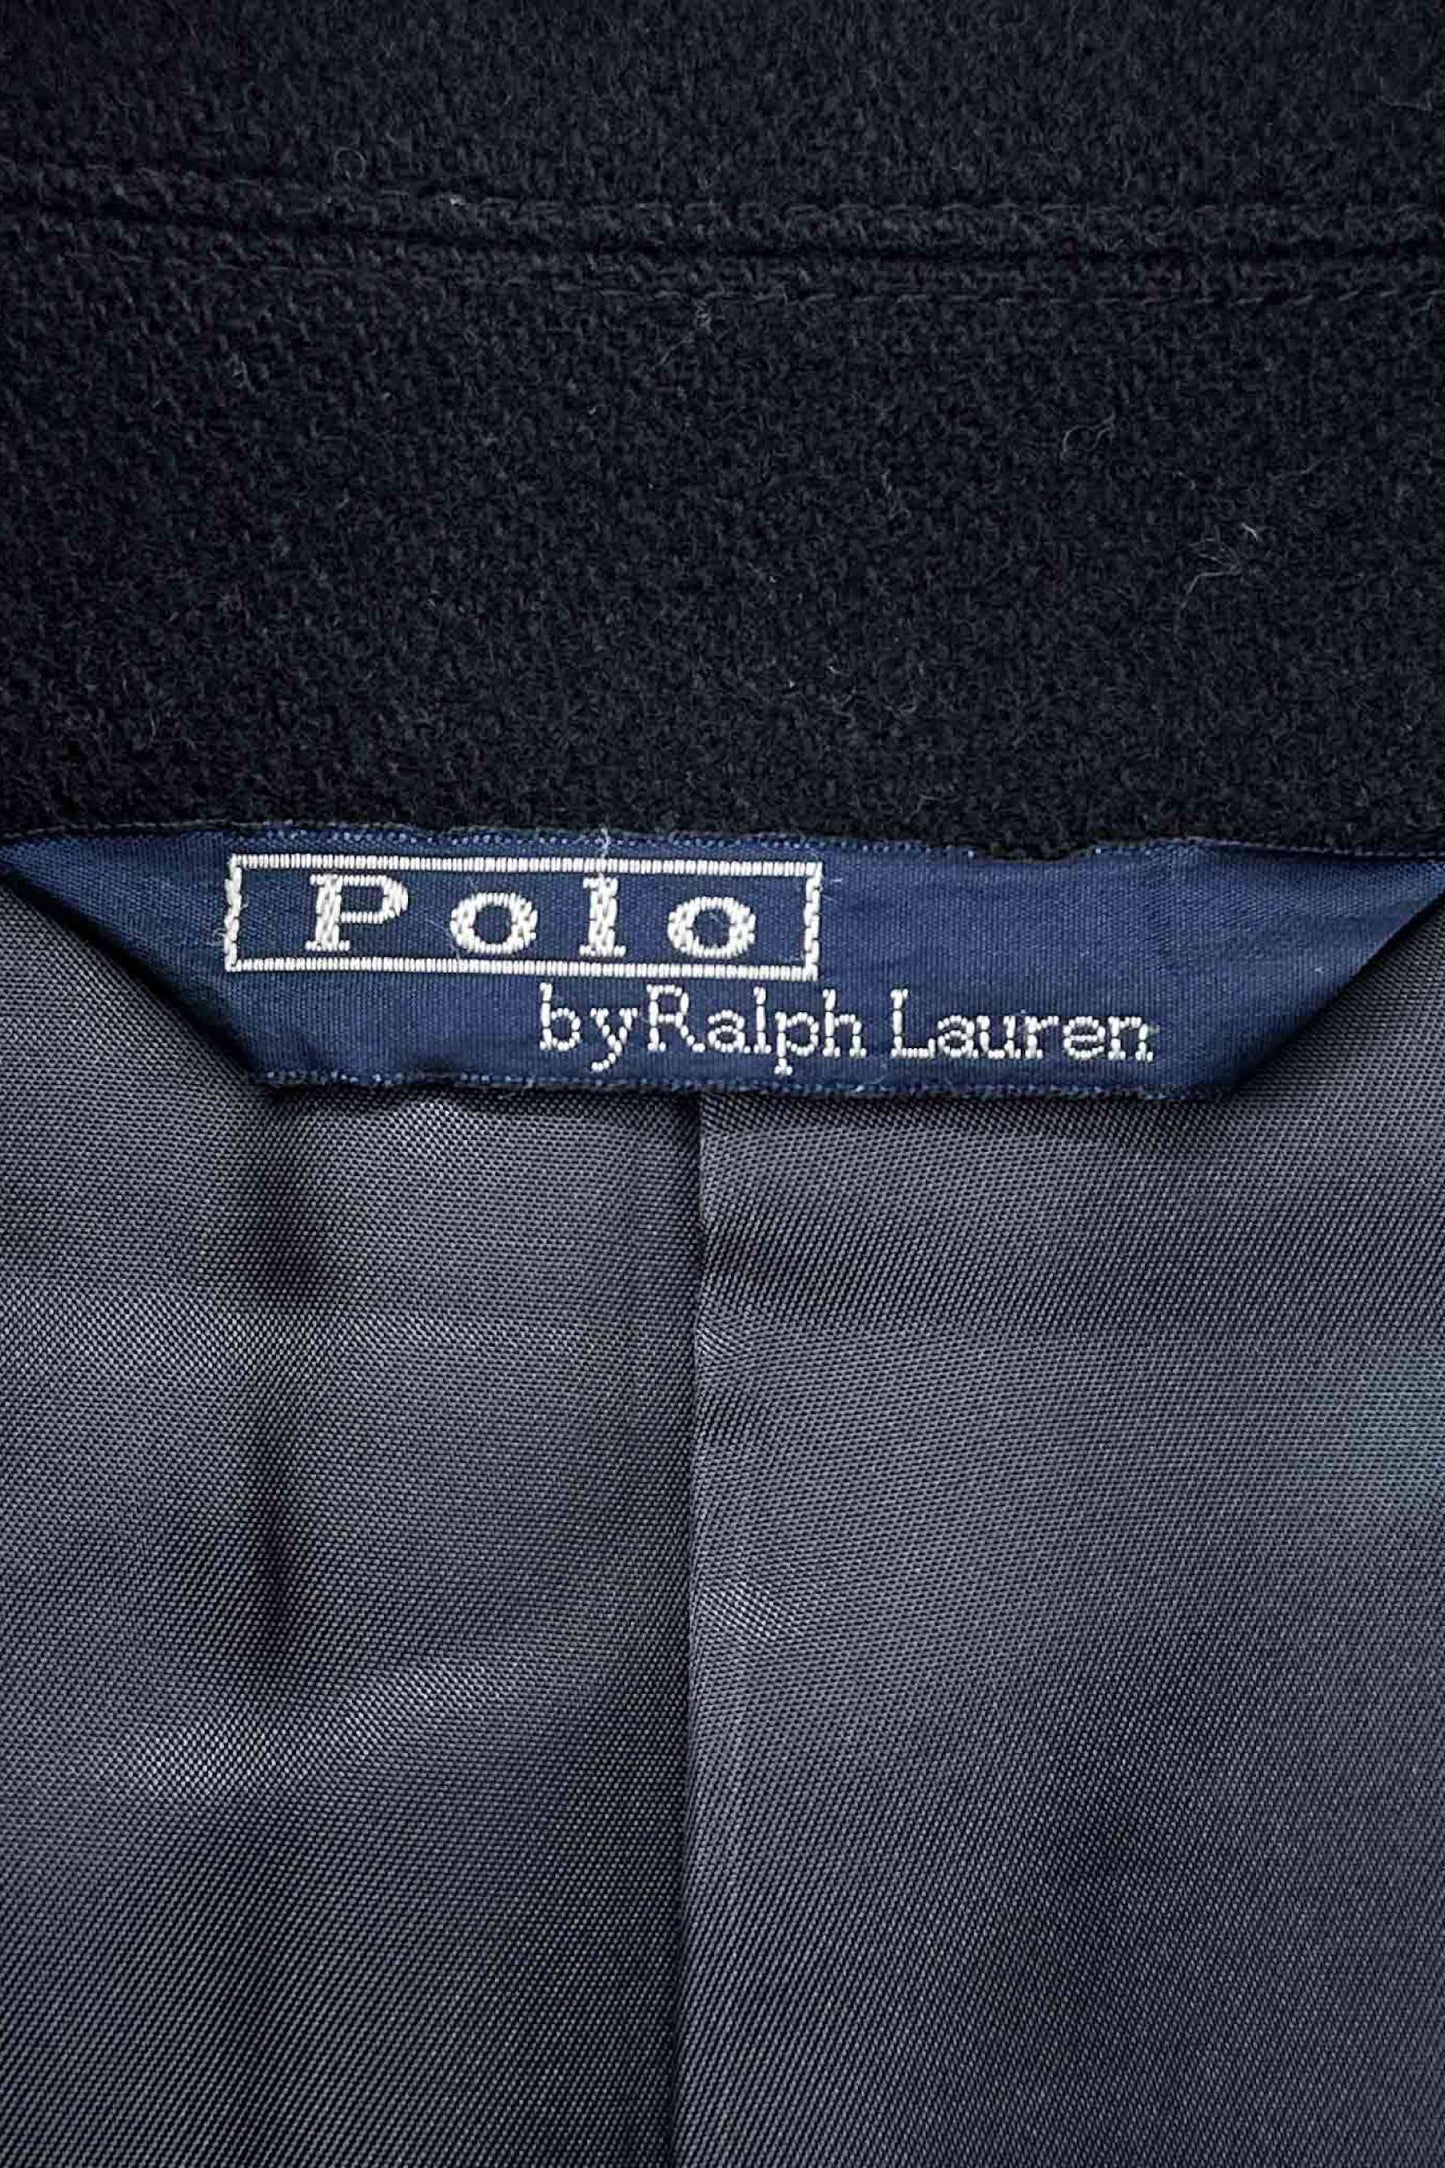 90 年代 Ralph Lauren 的 Polo 外套